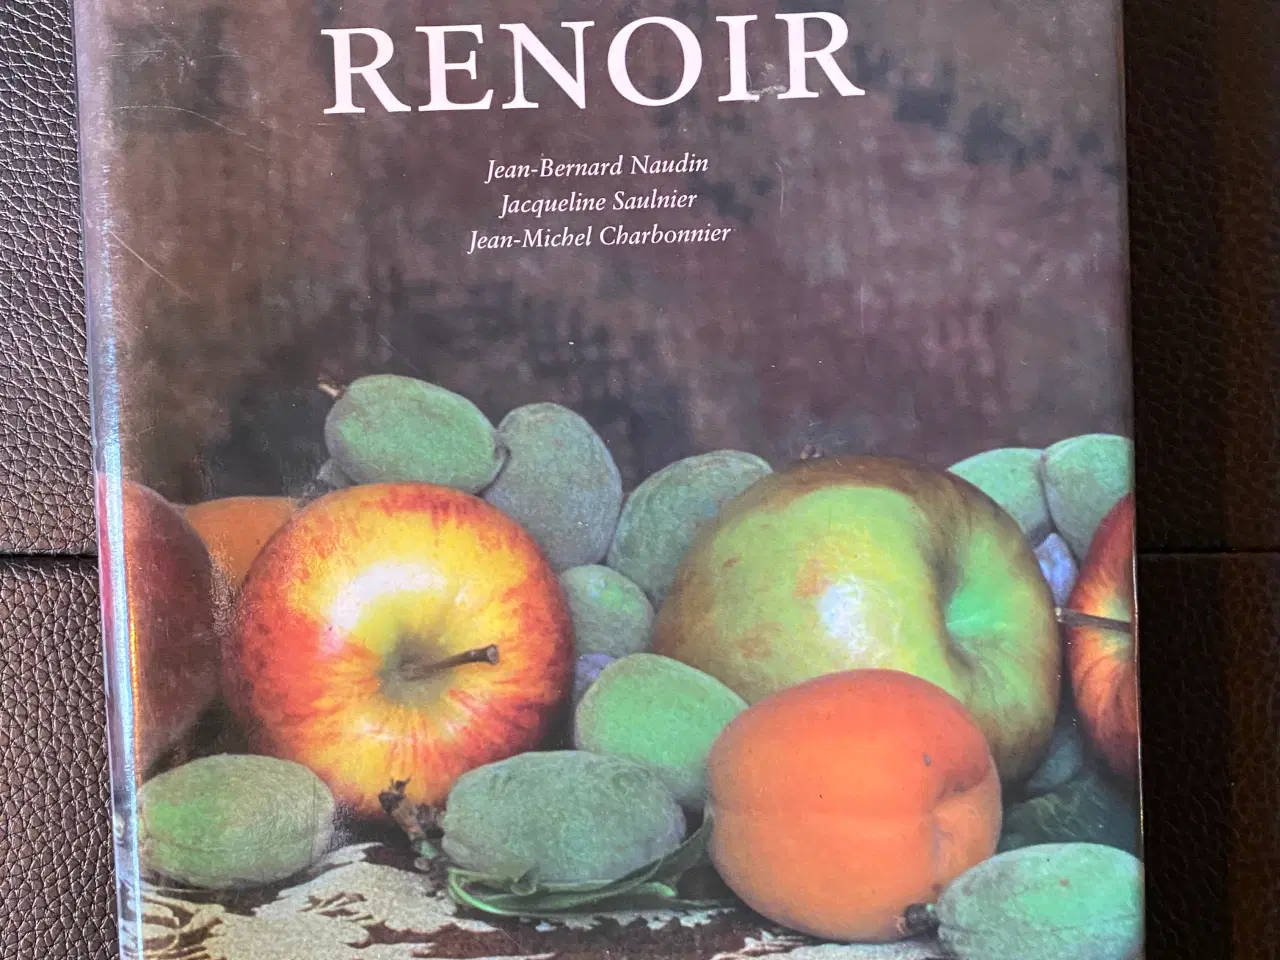 Billede 2 - Til bords med Renoir